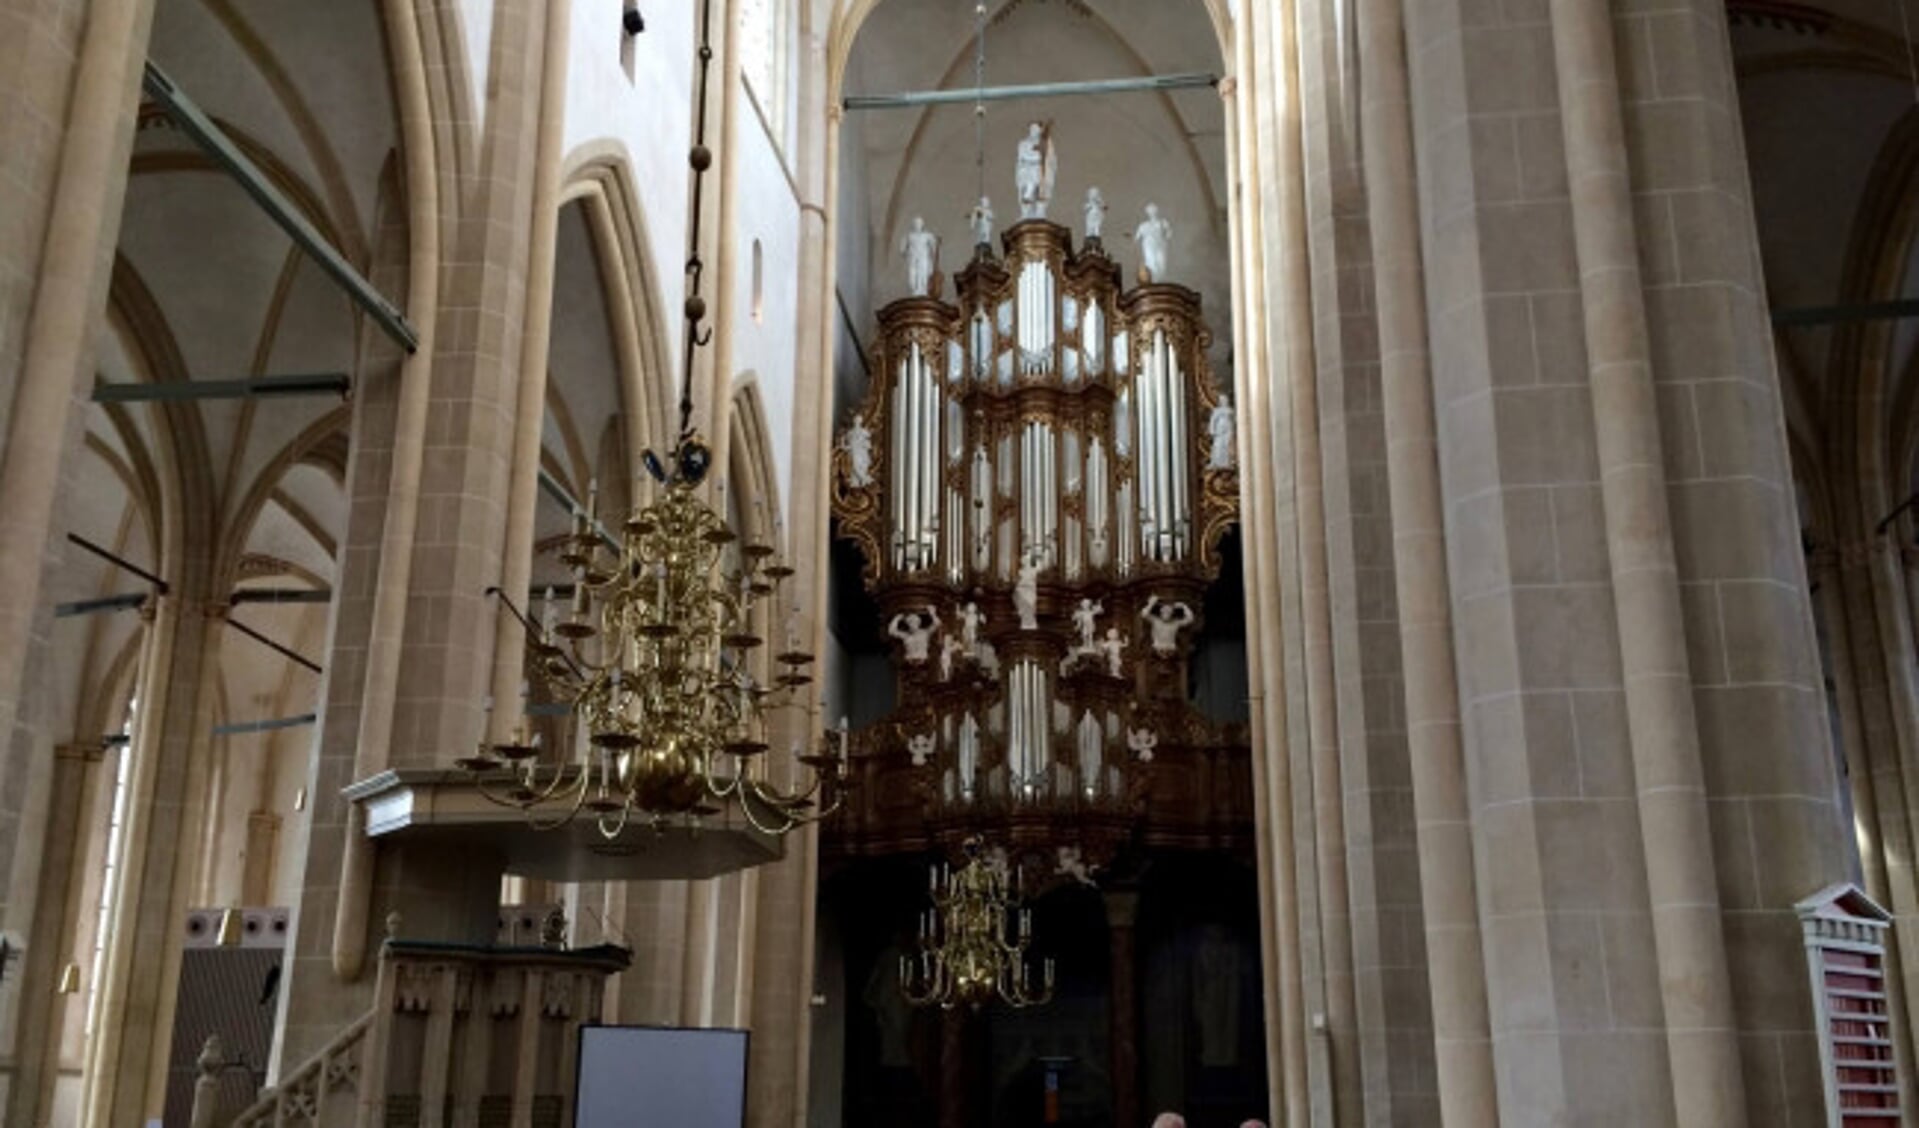  Het Hinsz orgel in de Bovenkerk.